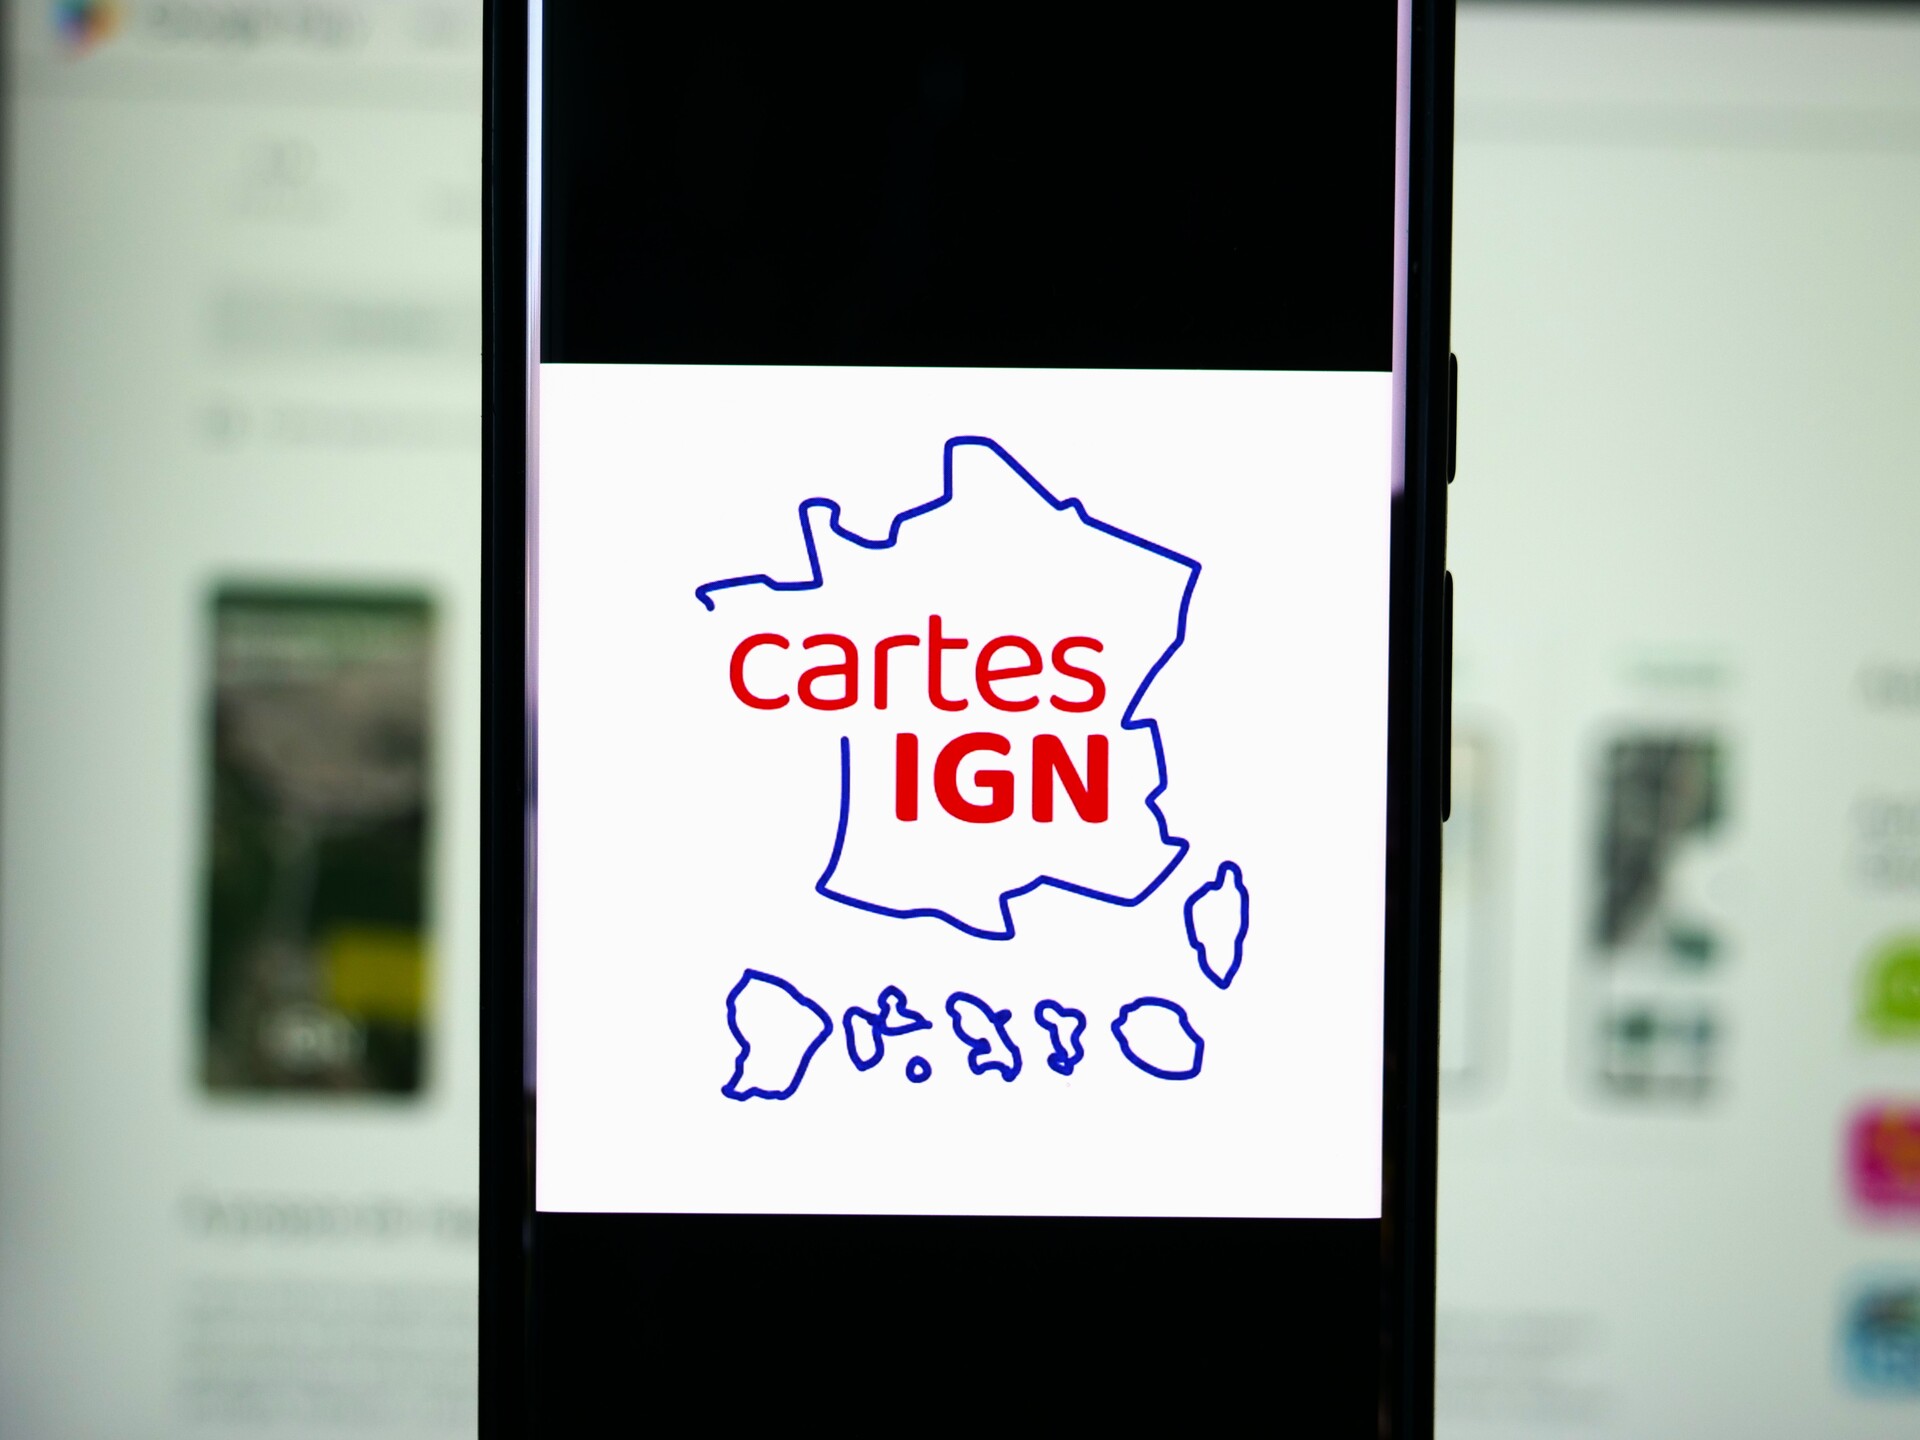 Voici Cartes IGN, l'appli française qui pourrait vite rivaliser avec Google Maps et Waze, on vous montre comment l'utiliser